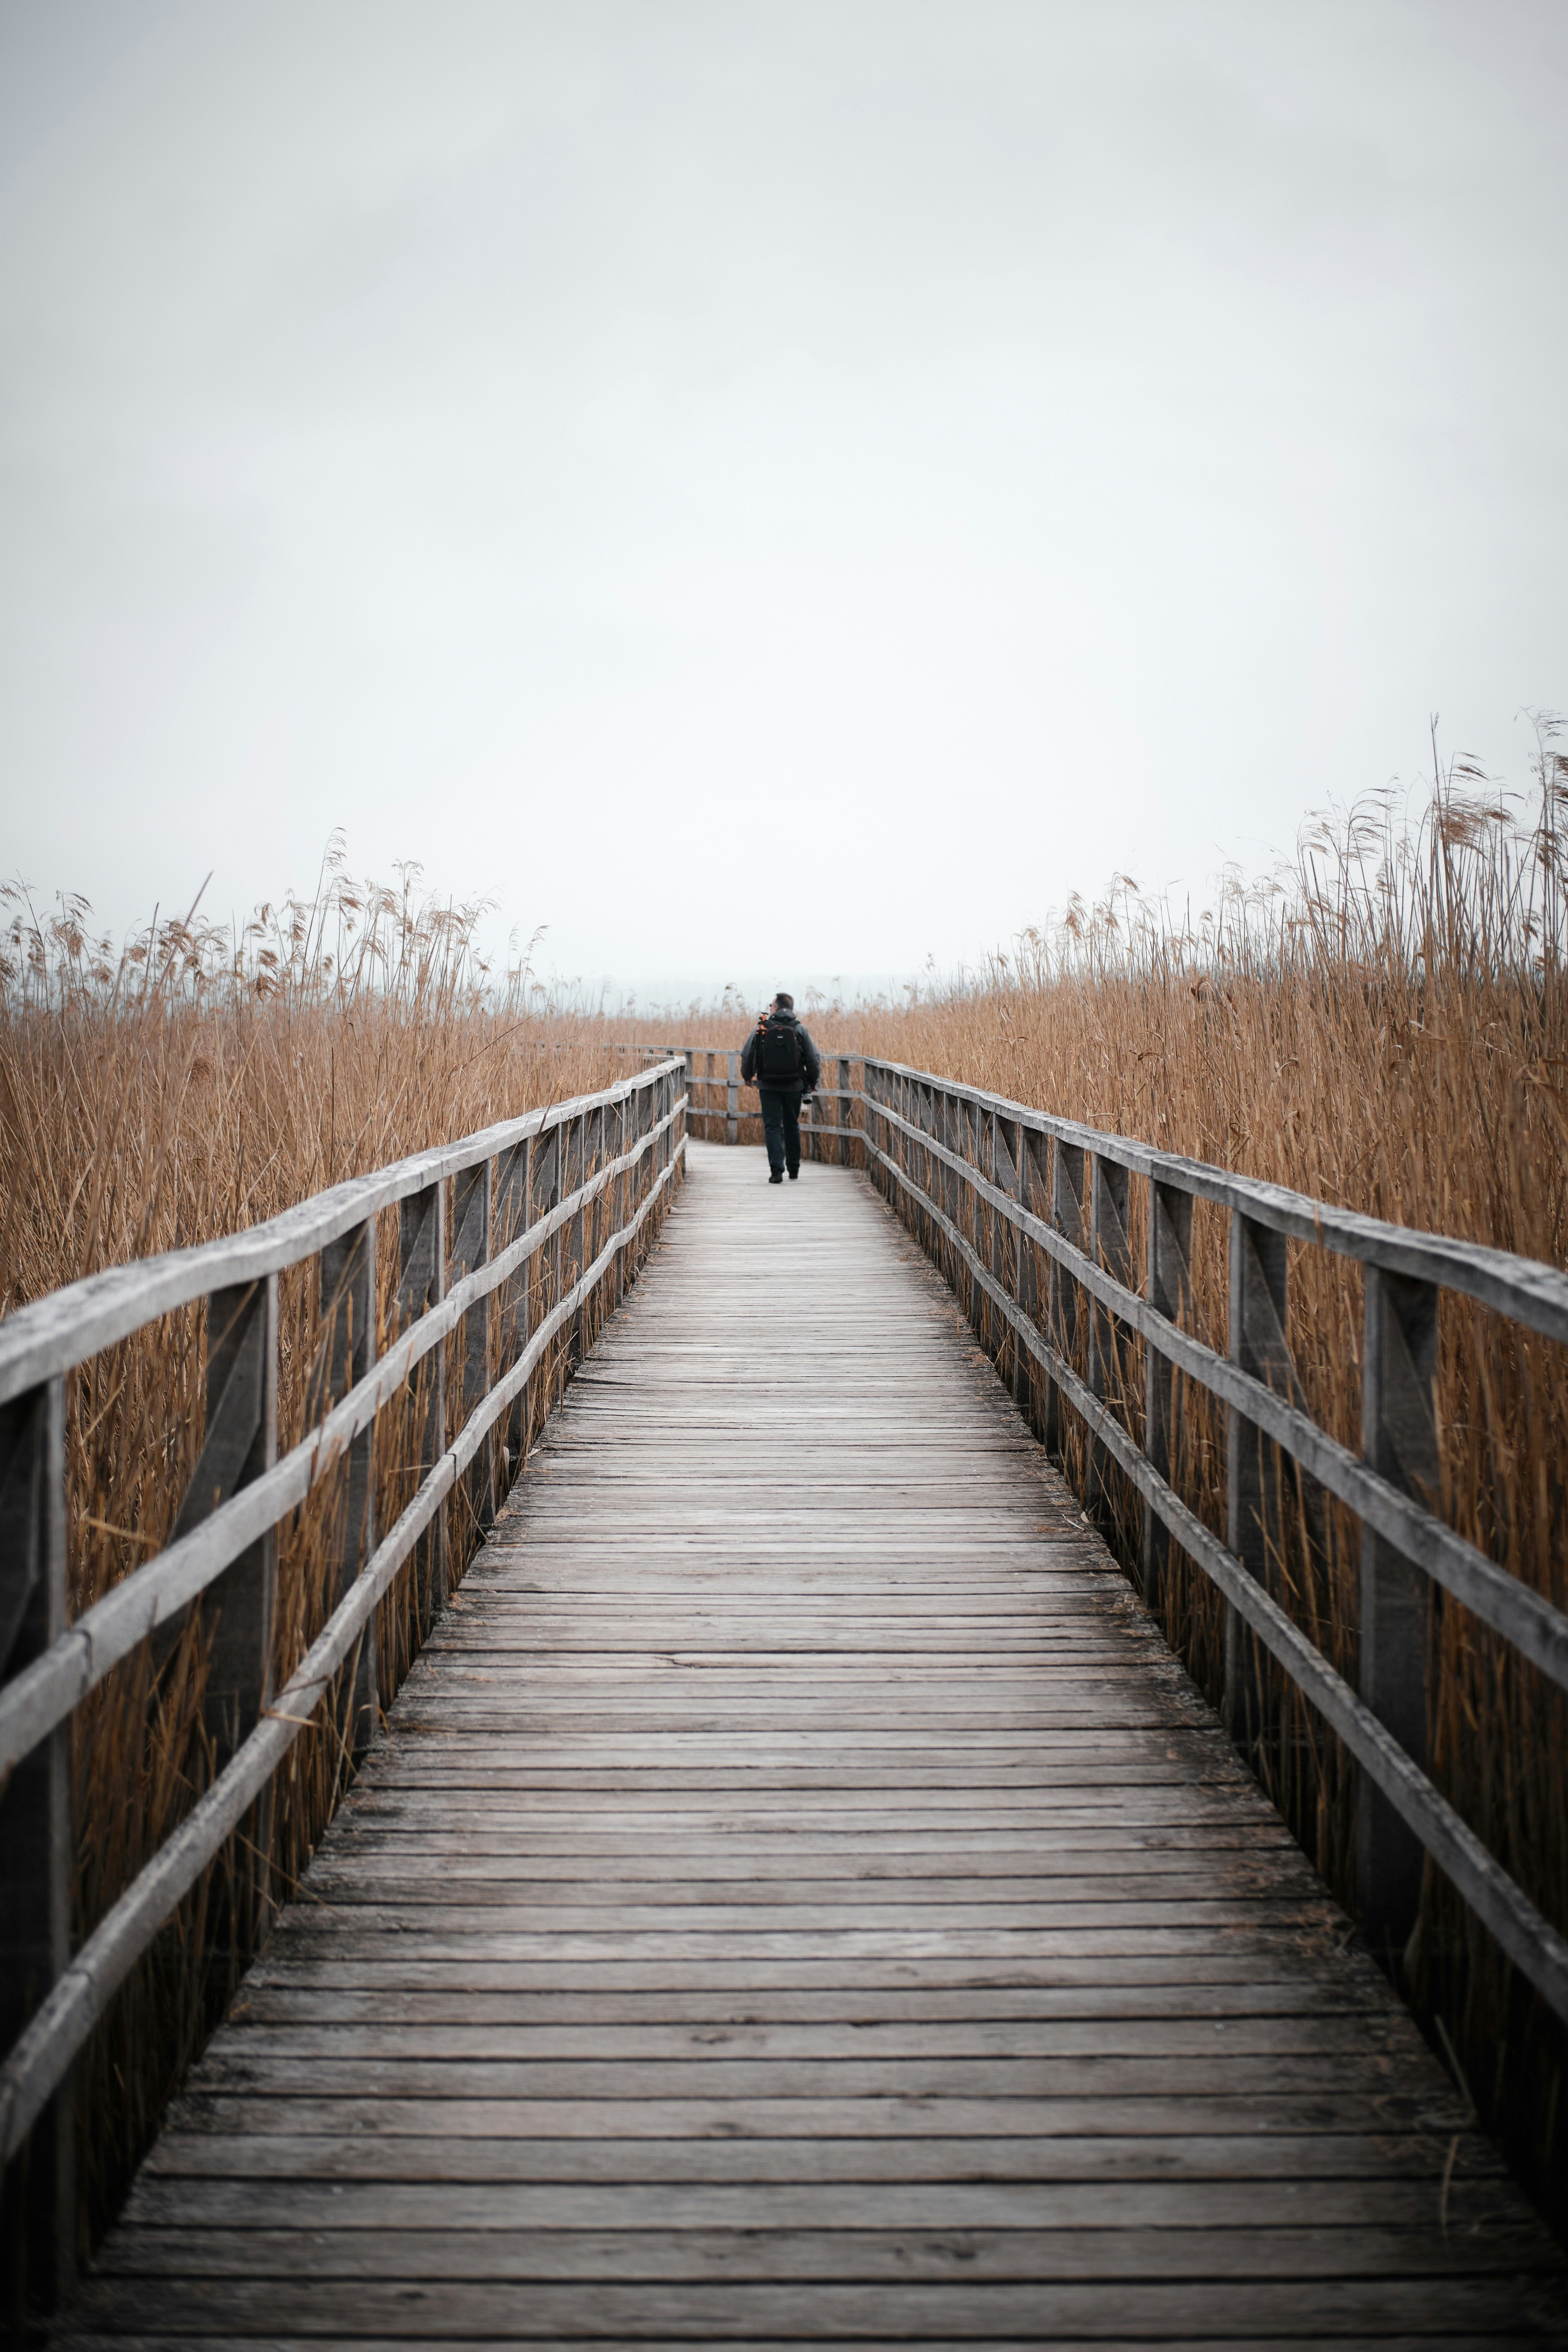 person walking on wooden bridge during daytime